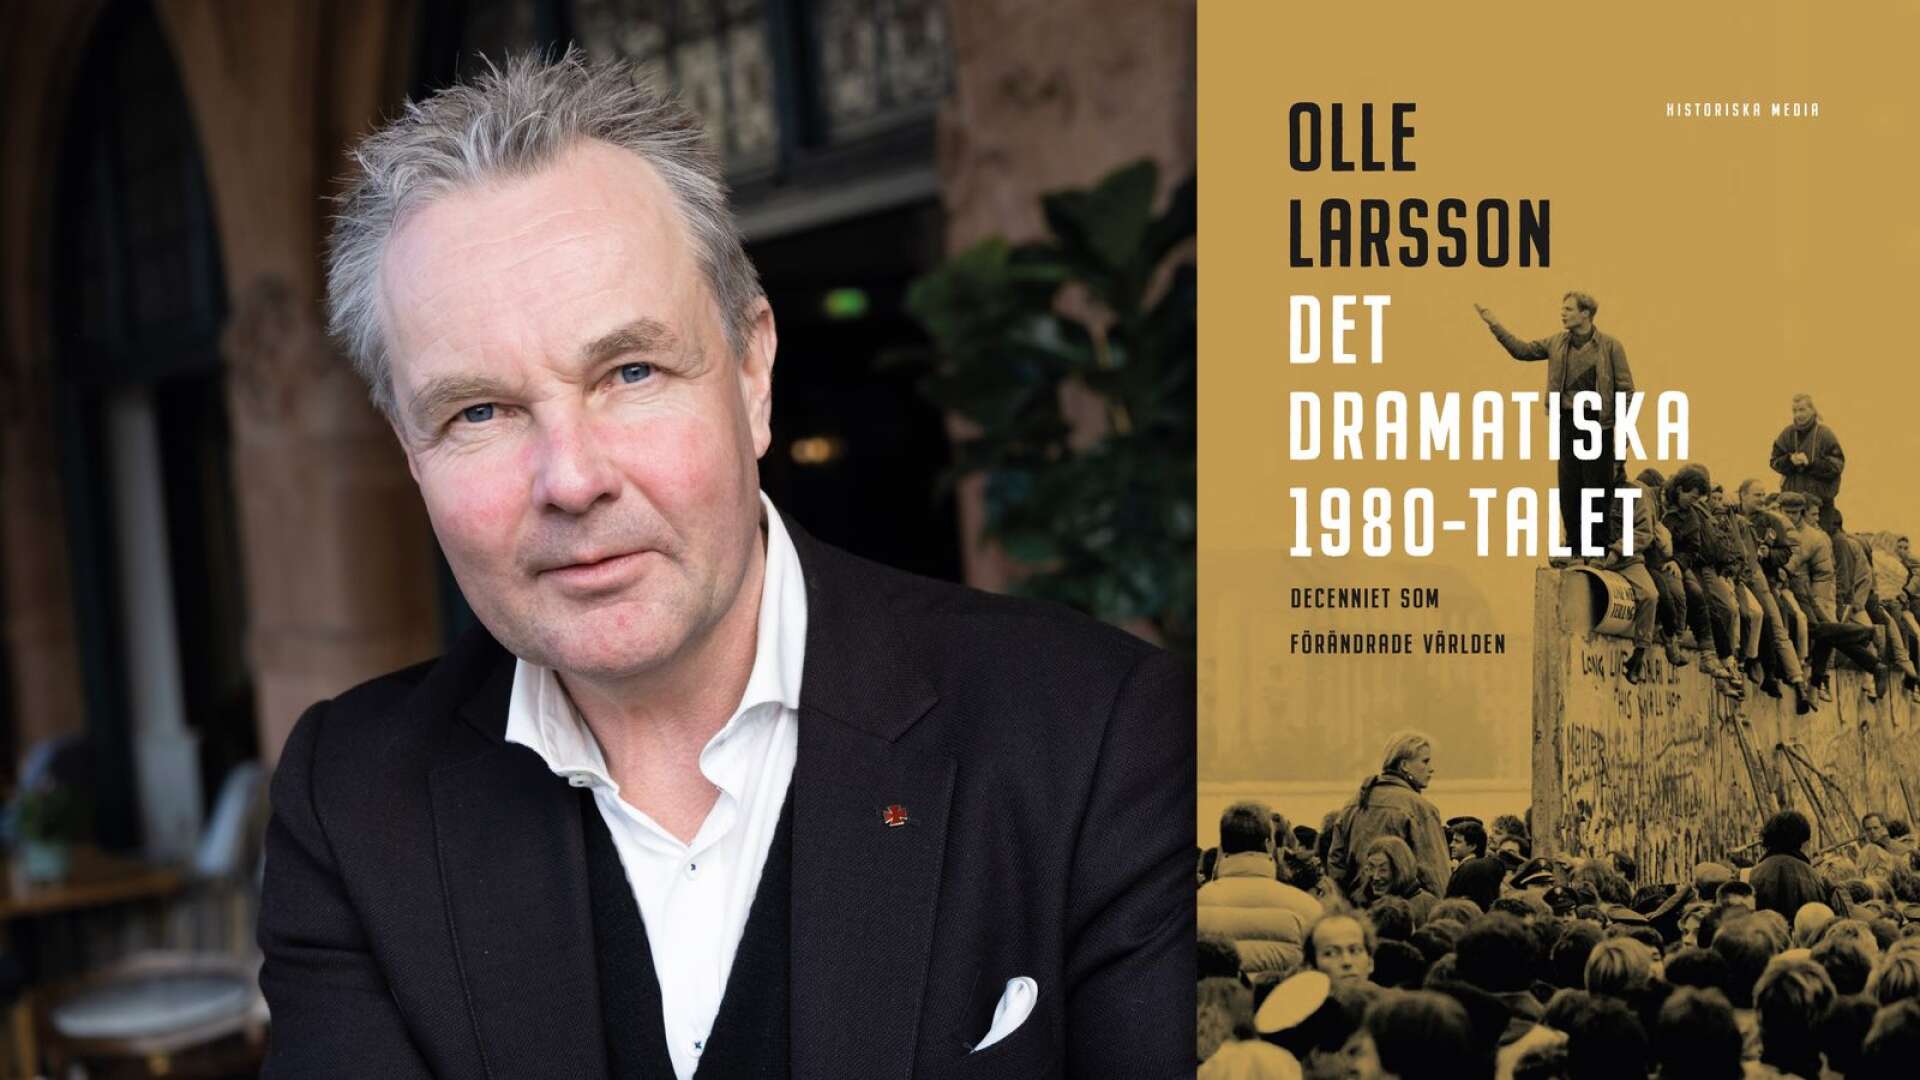 Många av dagens stora politiska frågor börjar på 1980-talet. Samtidigt är det 40 år sedan. Många som i dag är vuxna har egentligen inga egna minnen av den tiden, säger Olle Larsson.